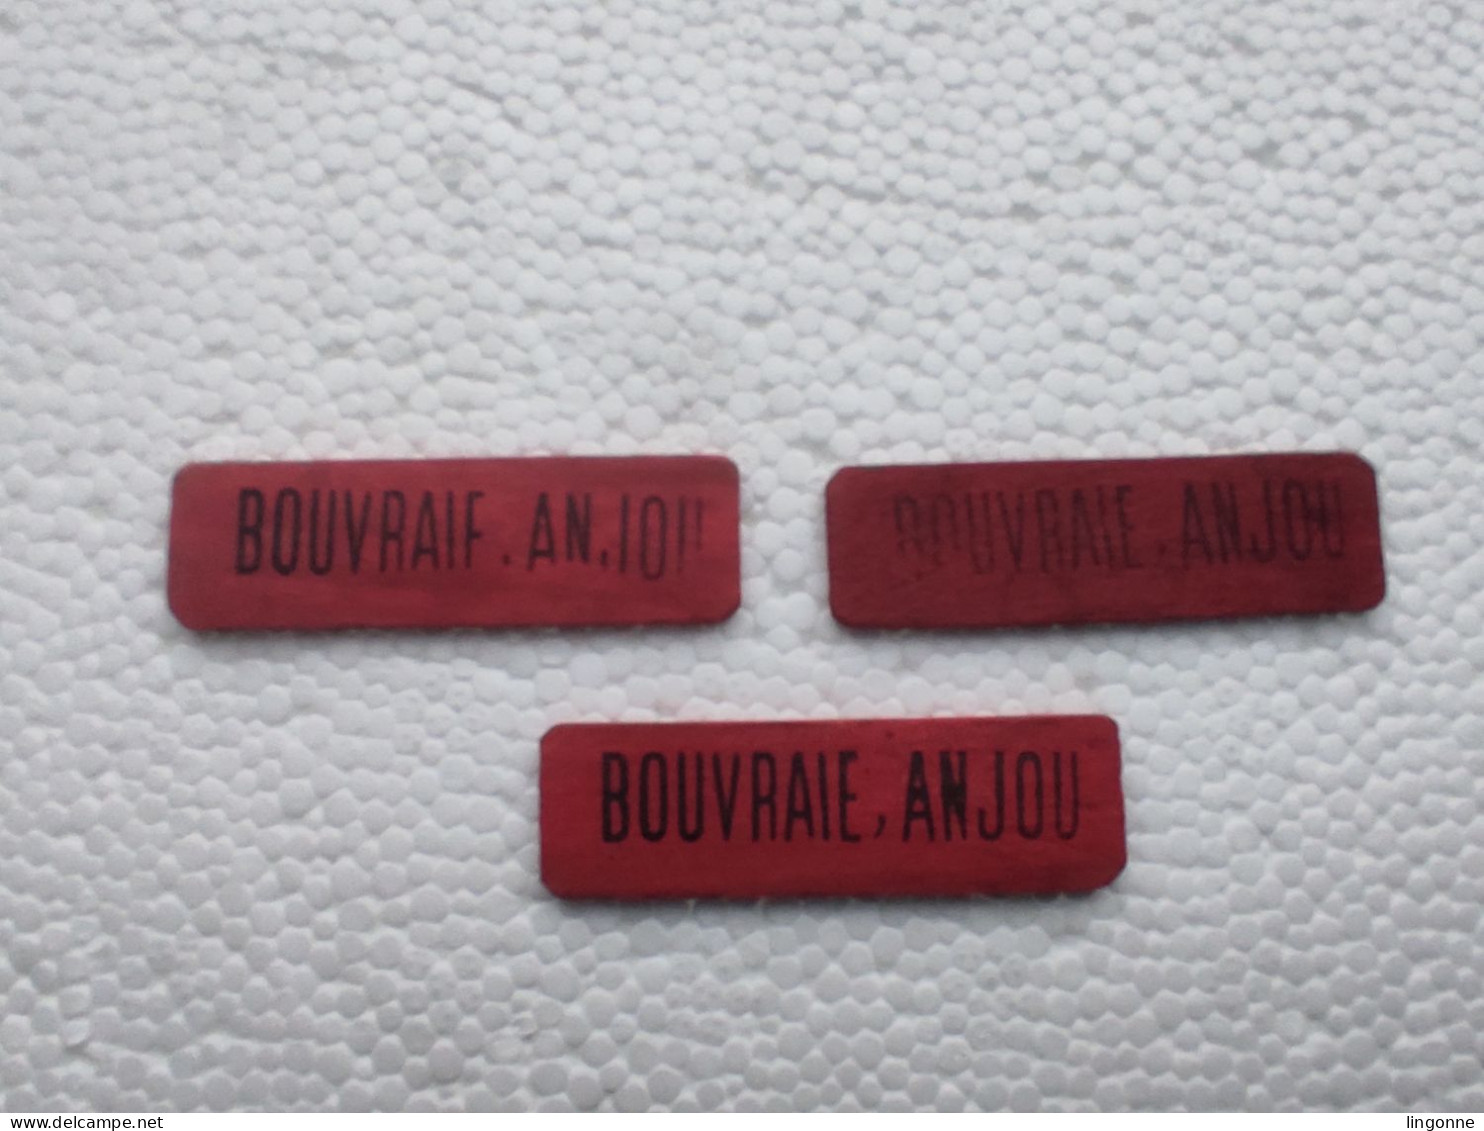 3 Jetons Publicitaires En Bois BOUVRAIE, ANJOU De L'autre Coté VIGNOBLES ET CAVES (rouge) - Alkohol